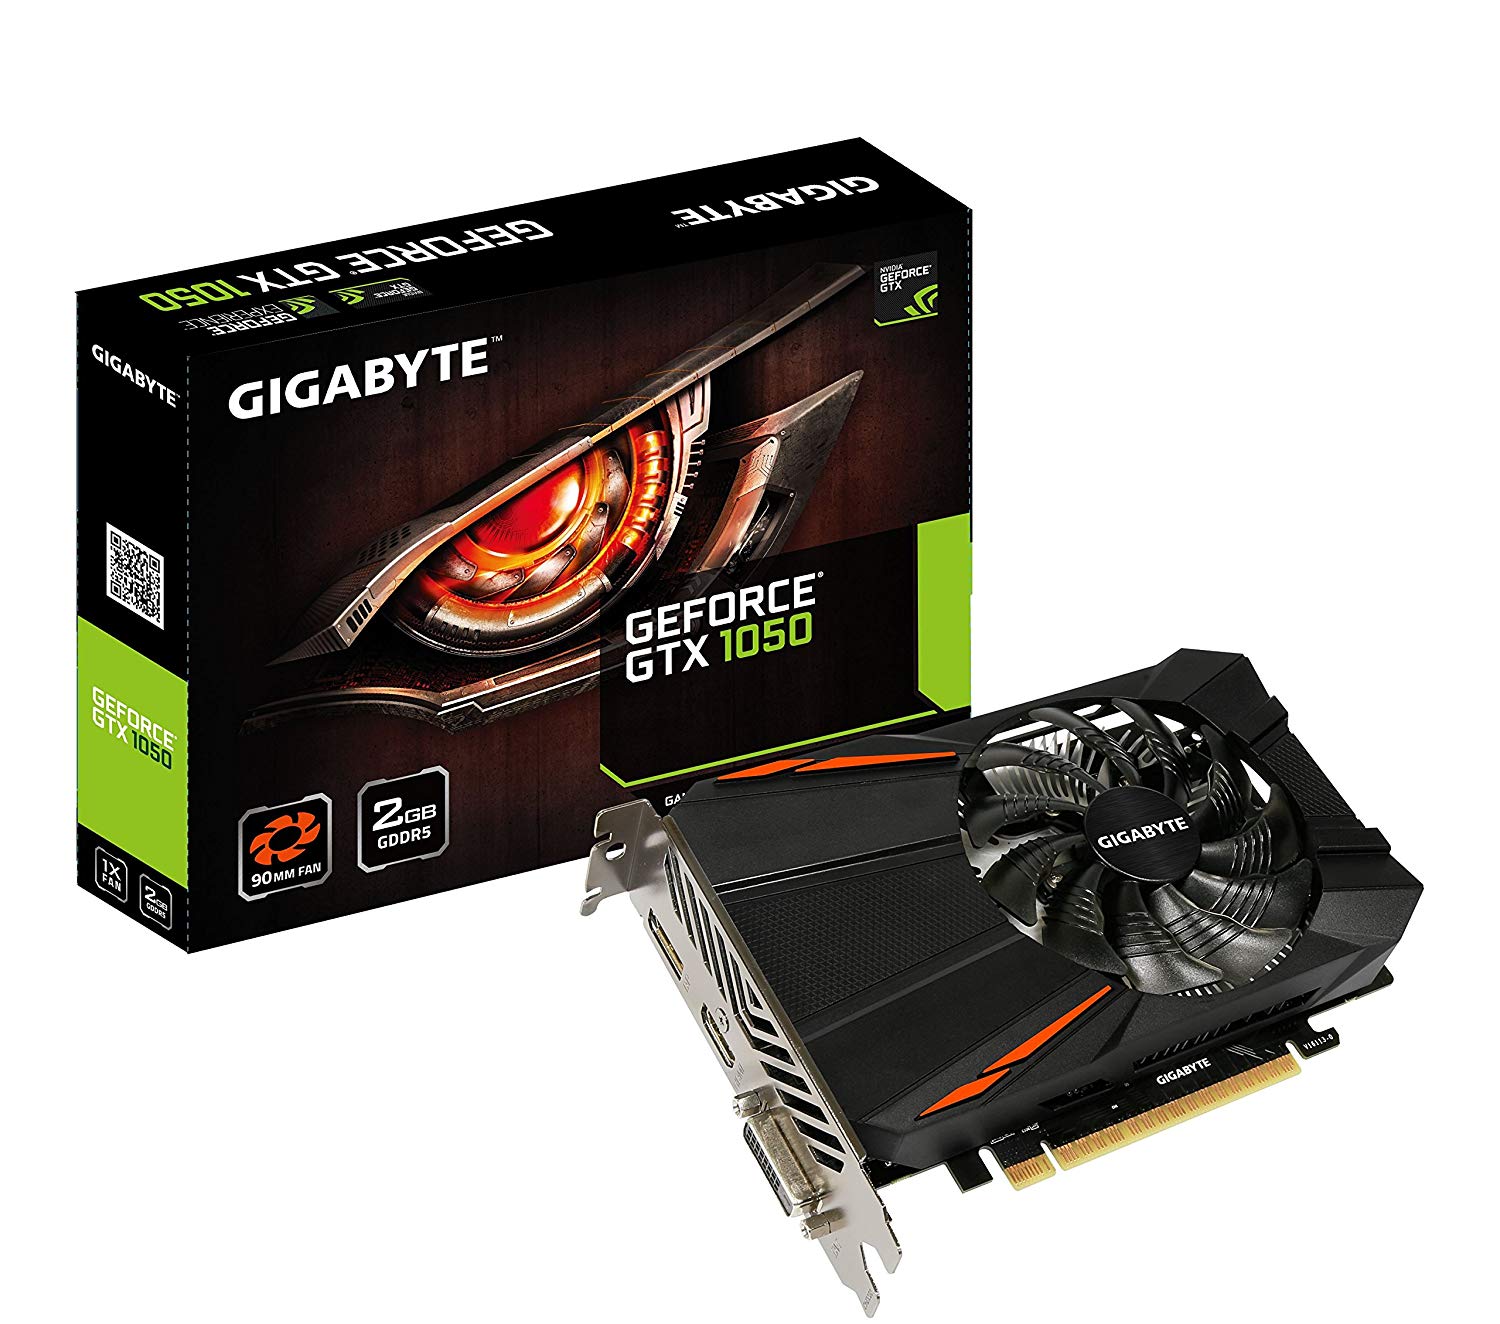 Gigabyte Geforce GTX 1050 (GV-N1050D5-2GD)